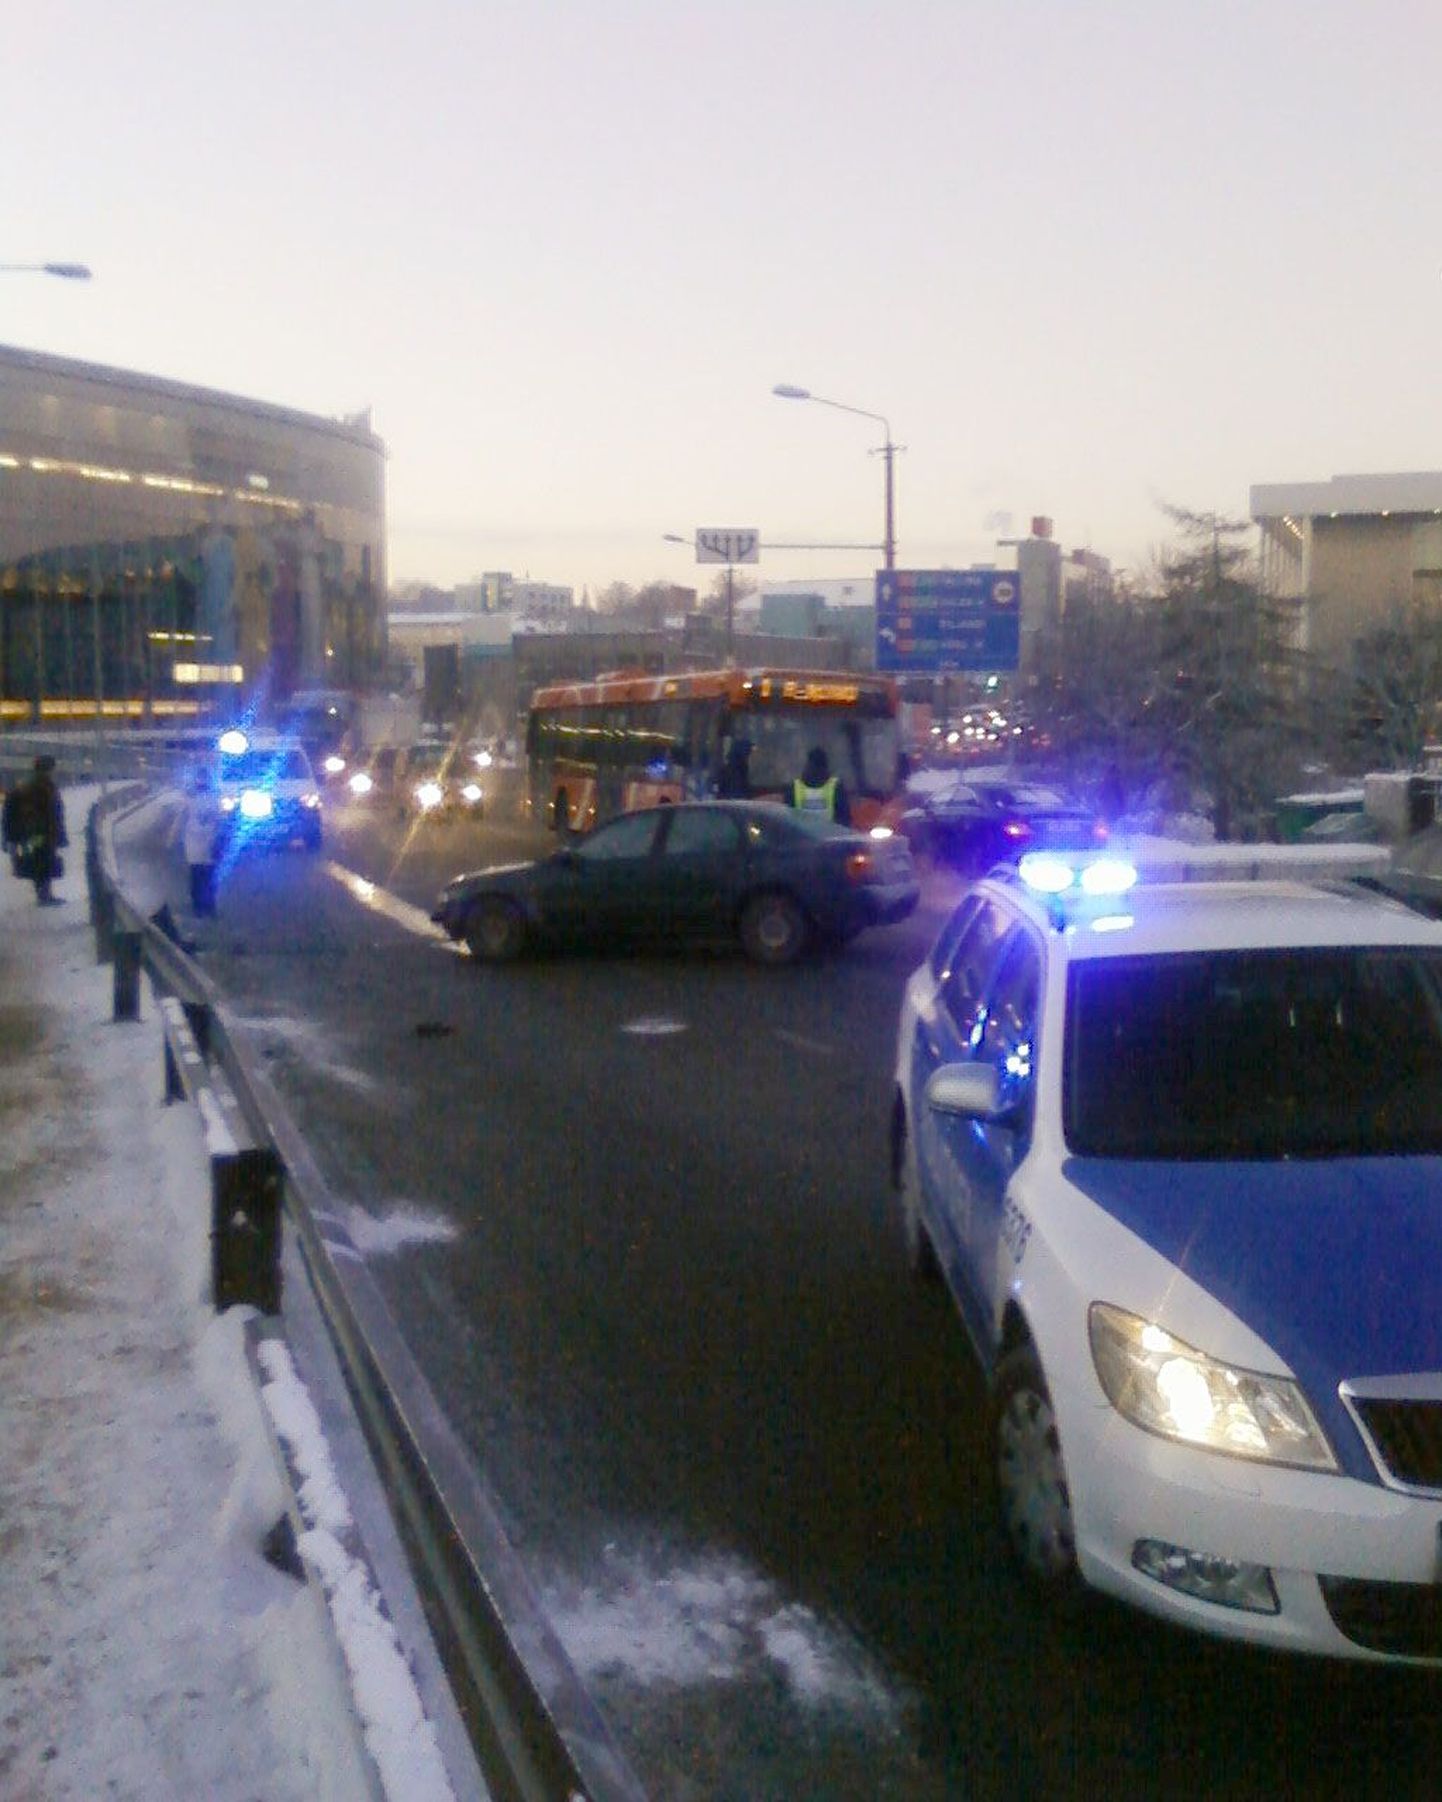 Liiklusõnnetus Tartus Võidu sillal. Pilt on tehtud 23. jaanuaril kella 8.30 paiku.